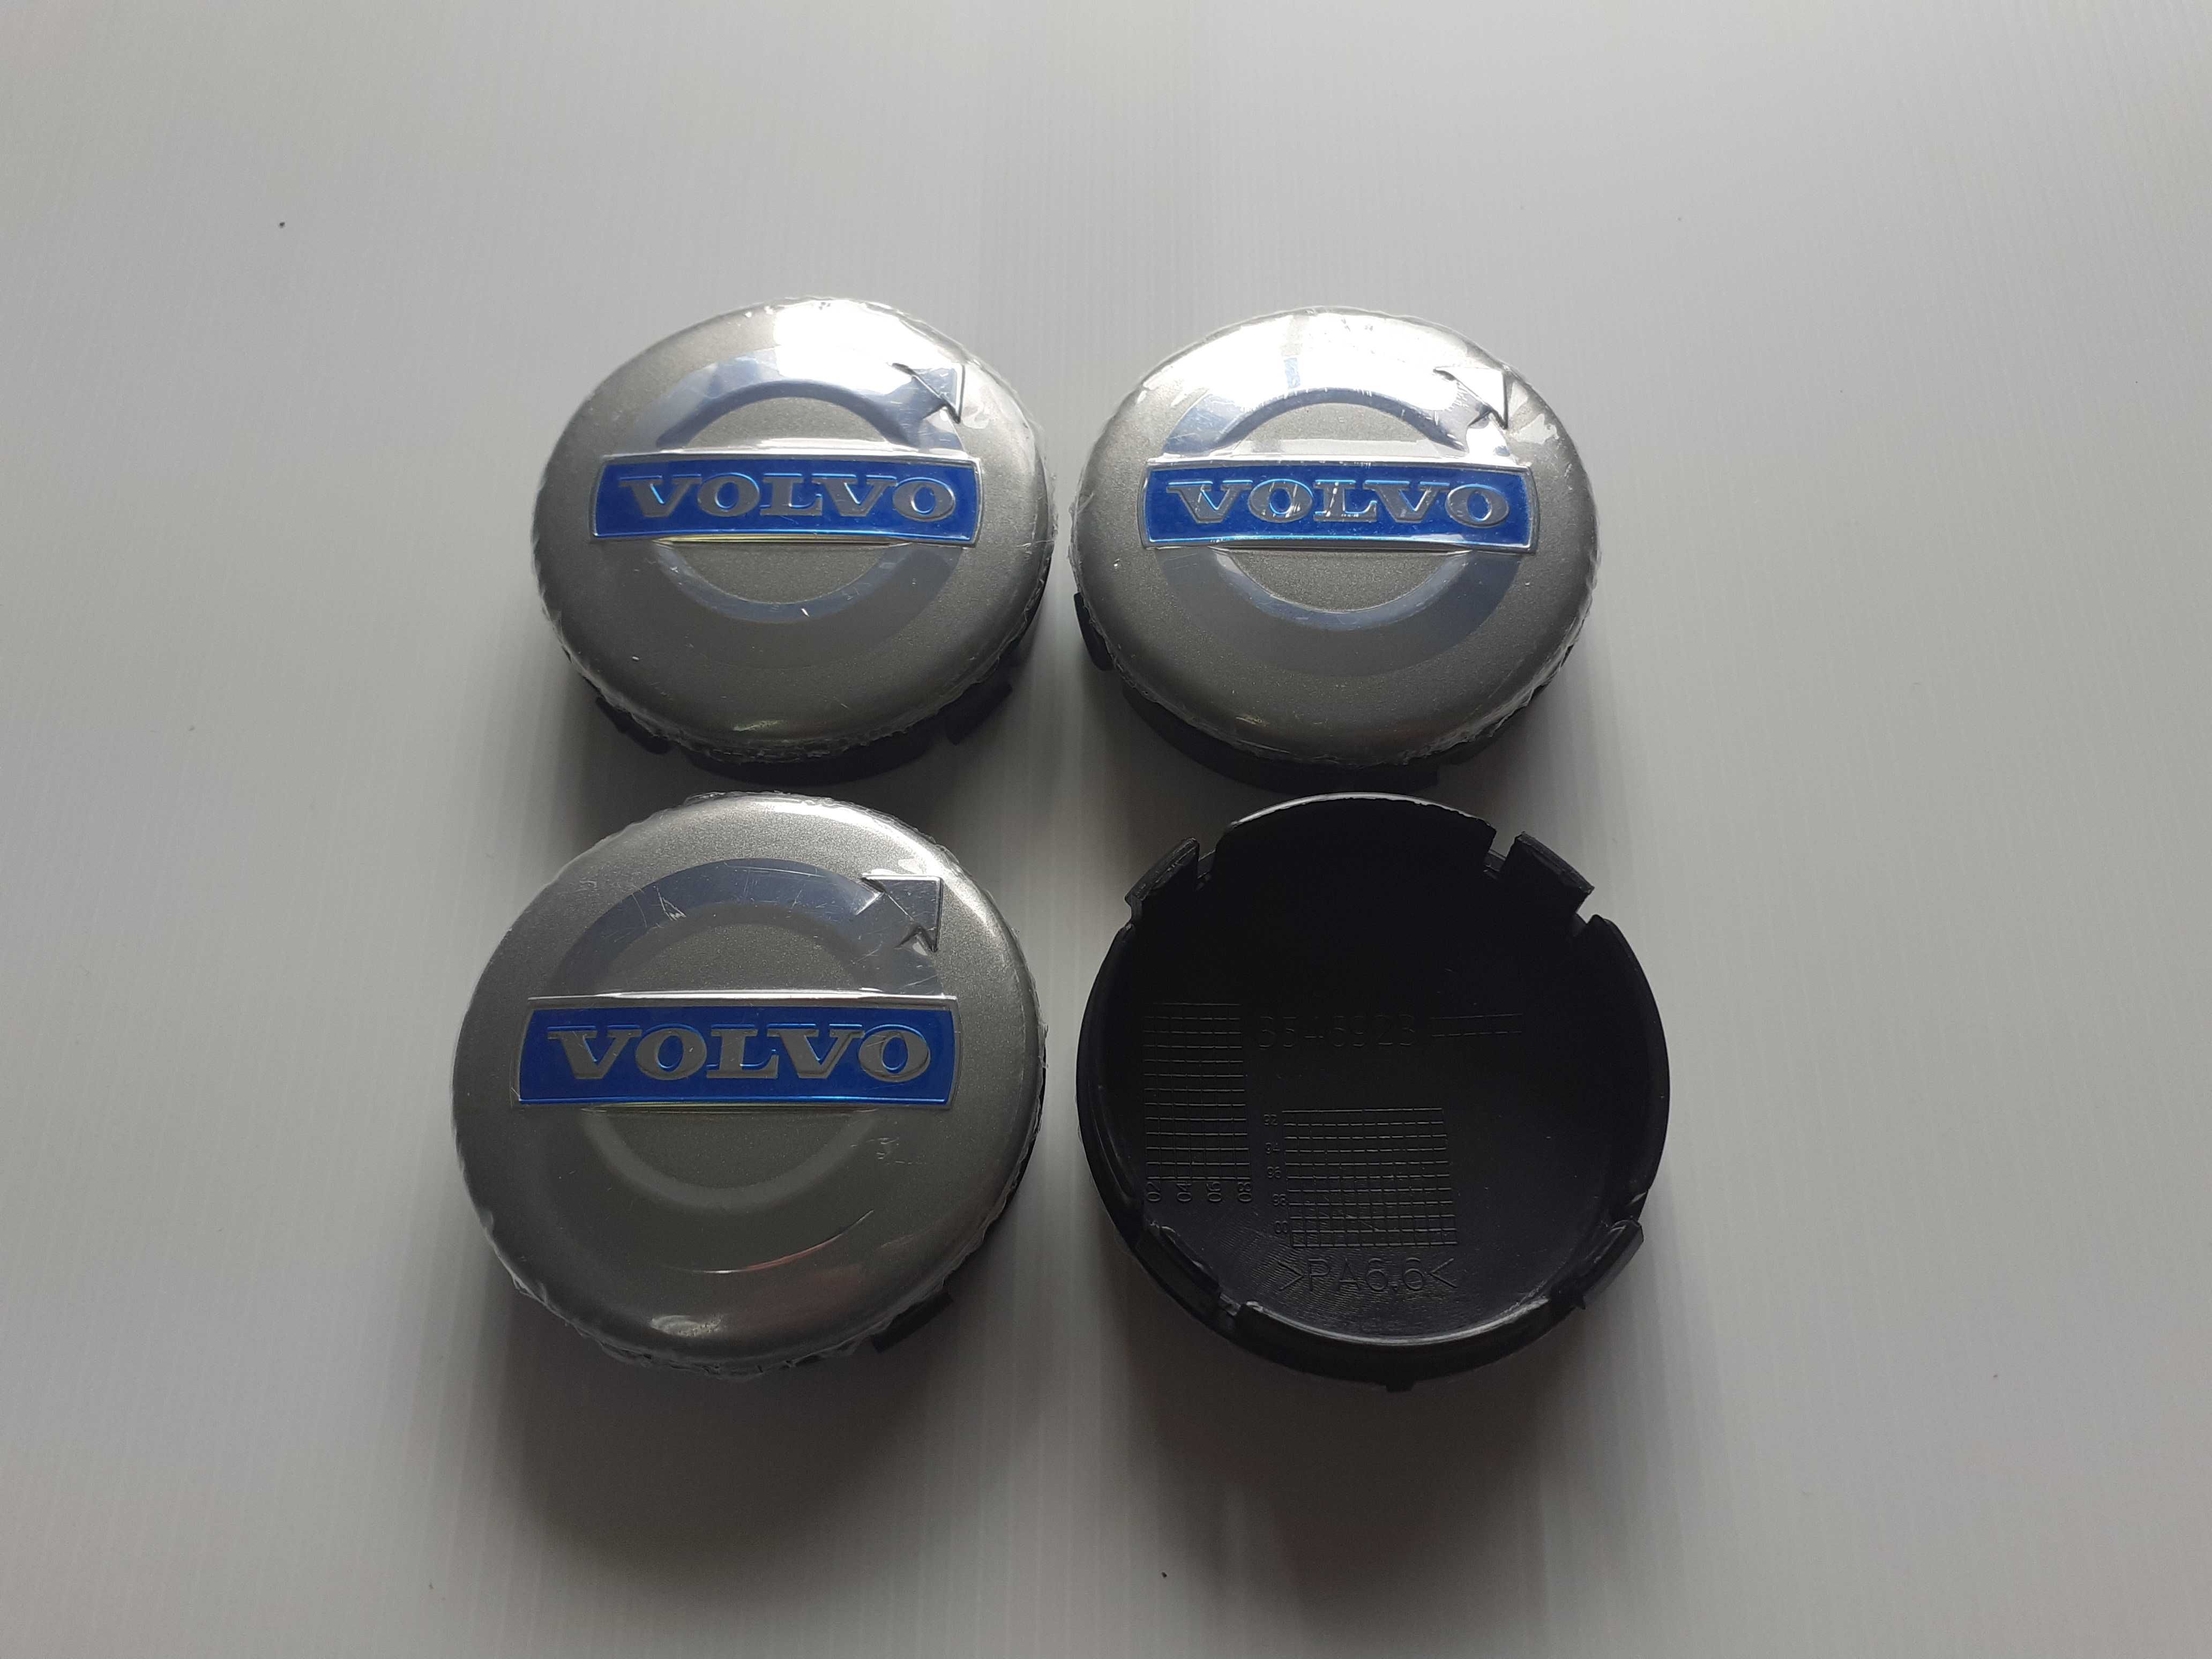 Centros/tampas de jante completos Volvo com 56, 60, 64 e 68 mm